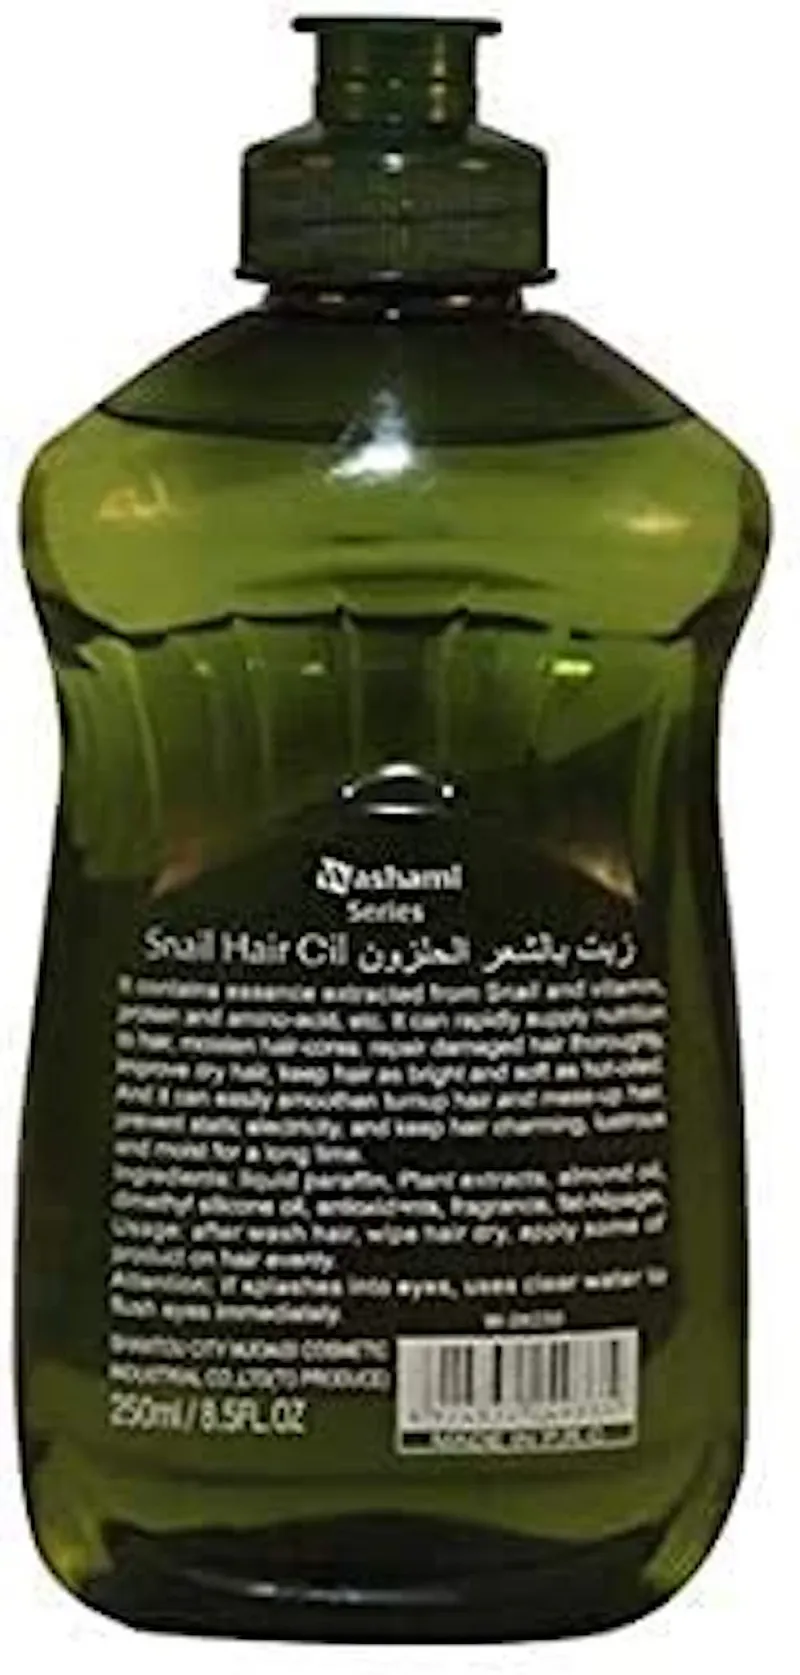 Snail Hair Oil 150 ml | Wholesale | Tradeling